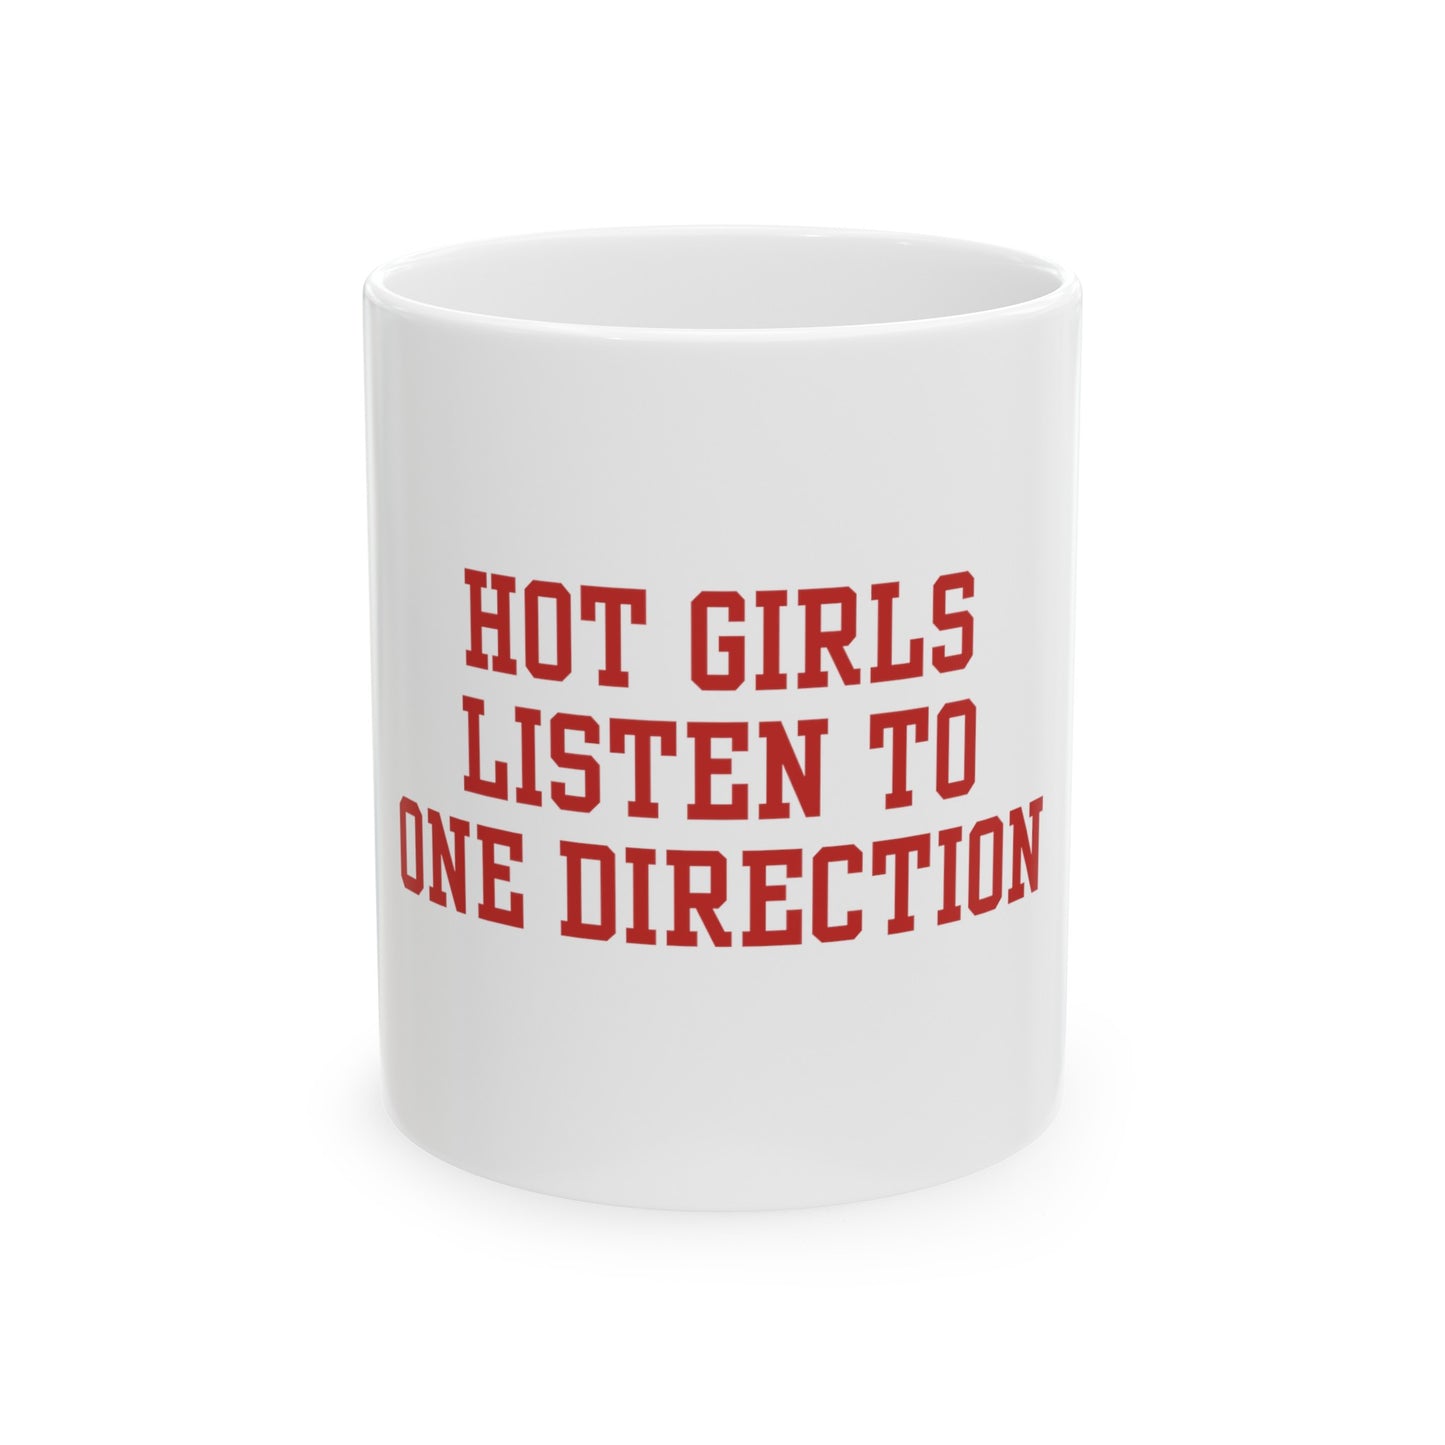 Hot girls listen to 1D - Mug